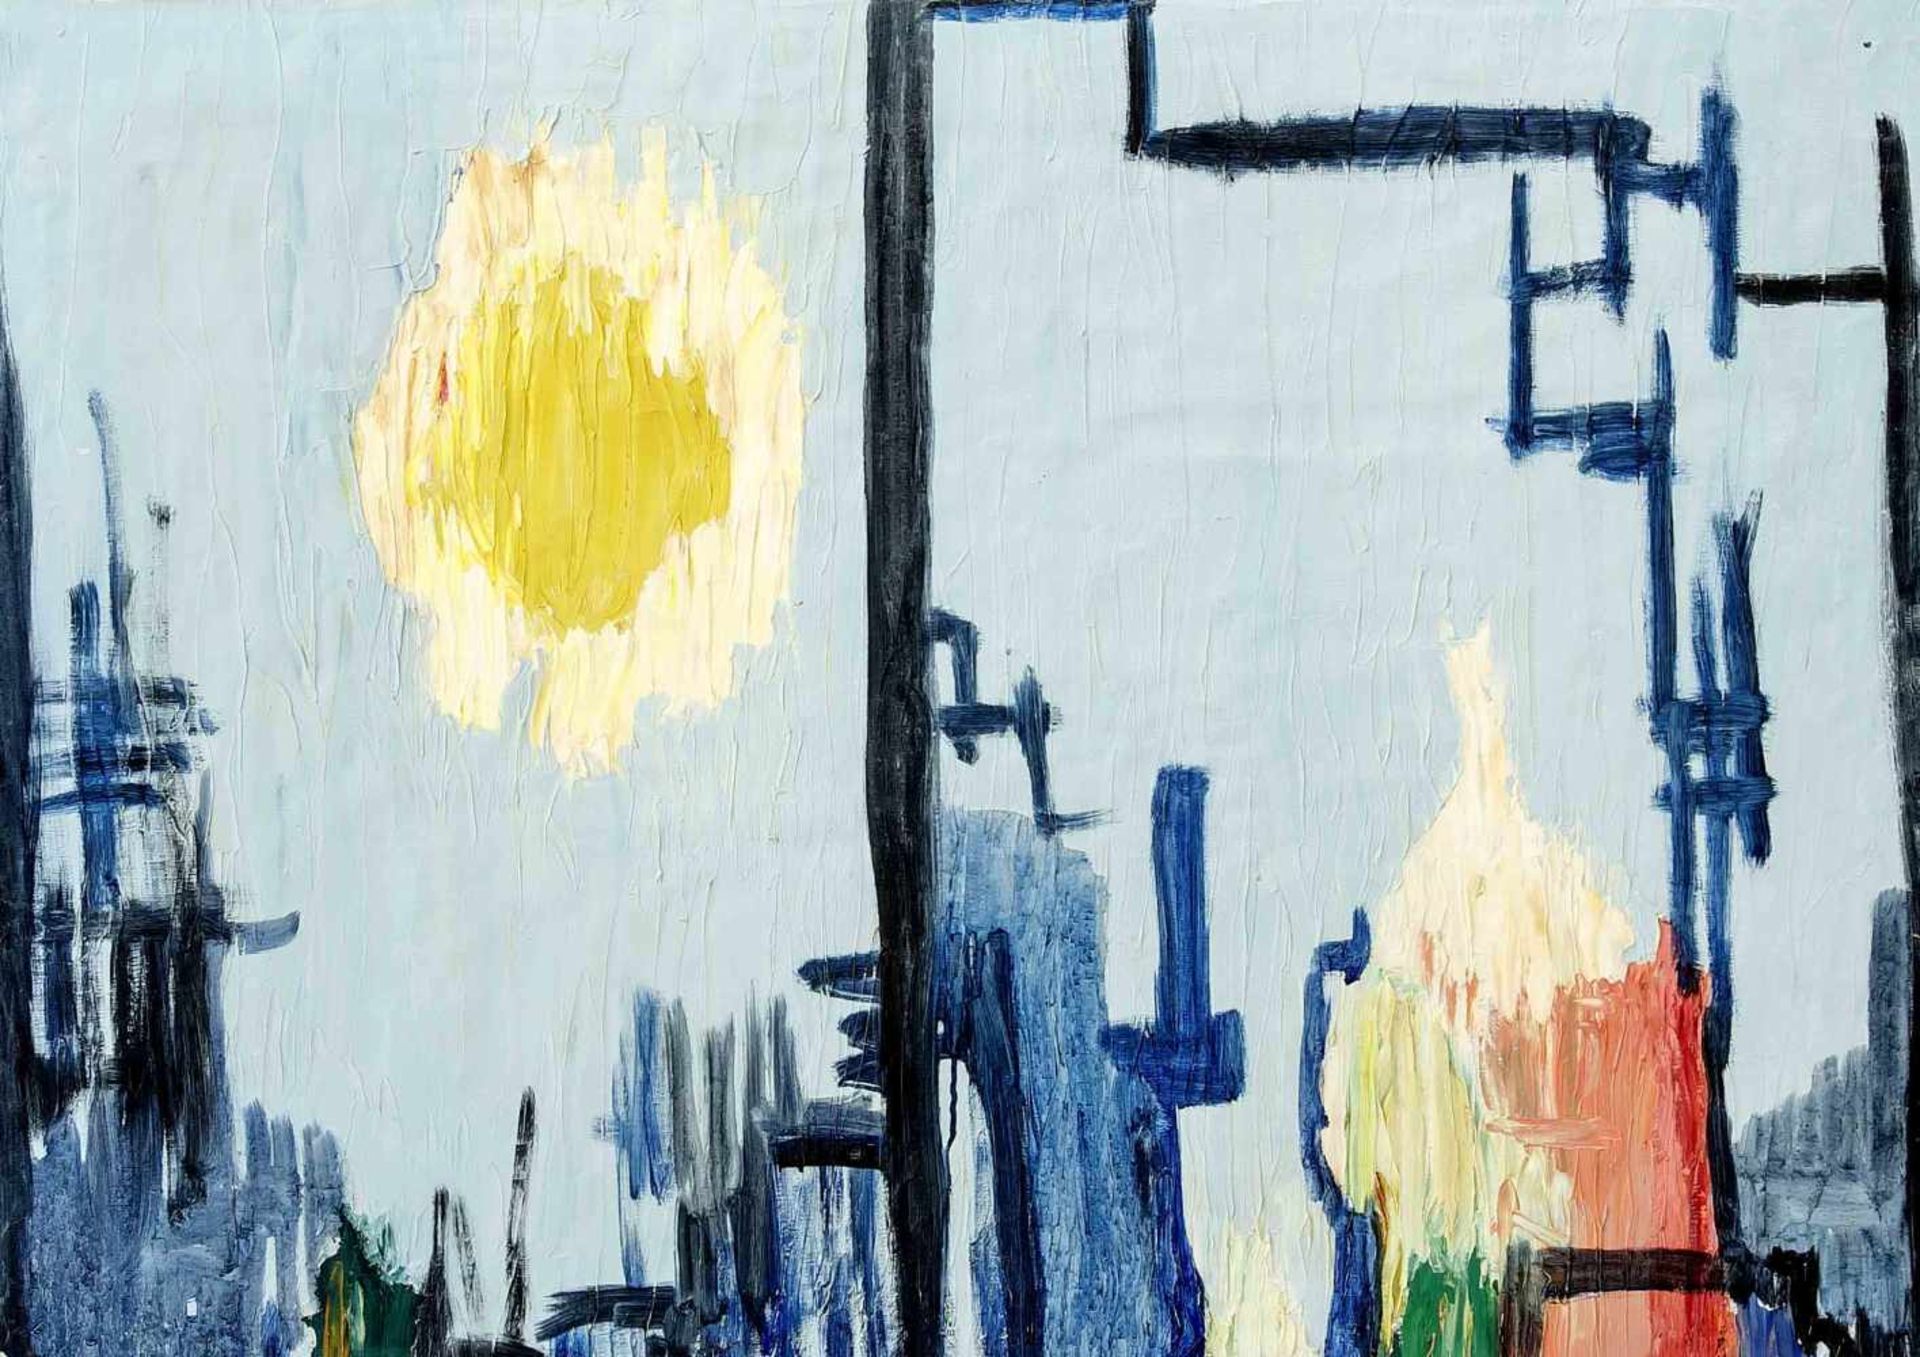 Anonmyer Maler um 1960, zwei Gemälde auf einer Leinwand, recto Farbfeldkomposition, versoabstrakte